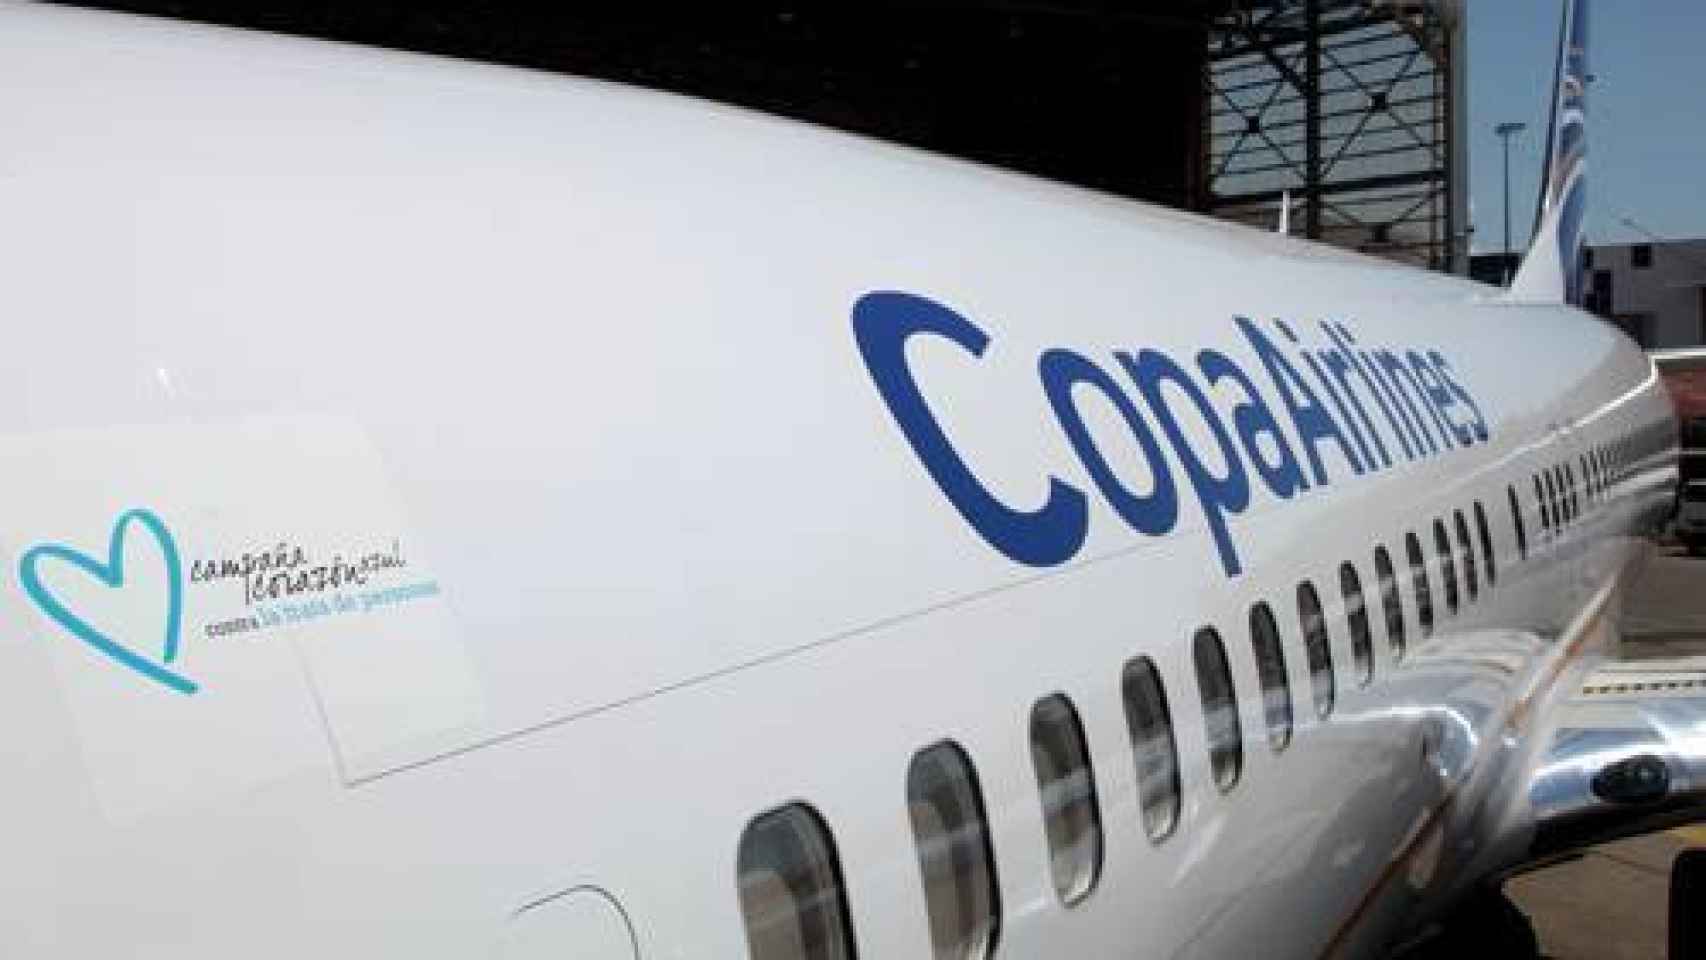 Uno de los aviones de Copa Airlines con el logo de 'Corazón Azul'.